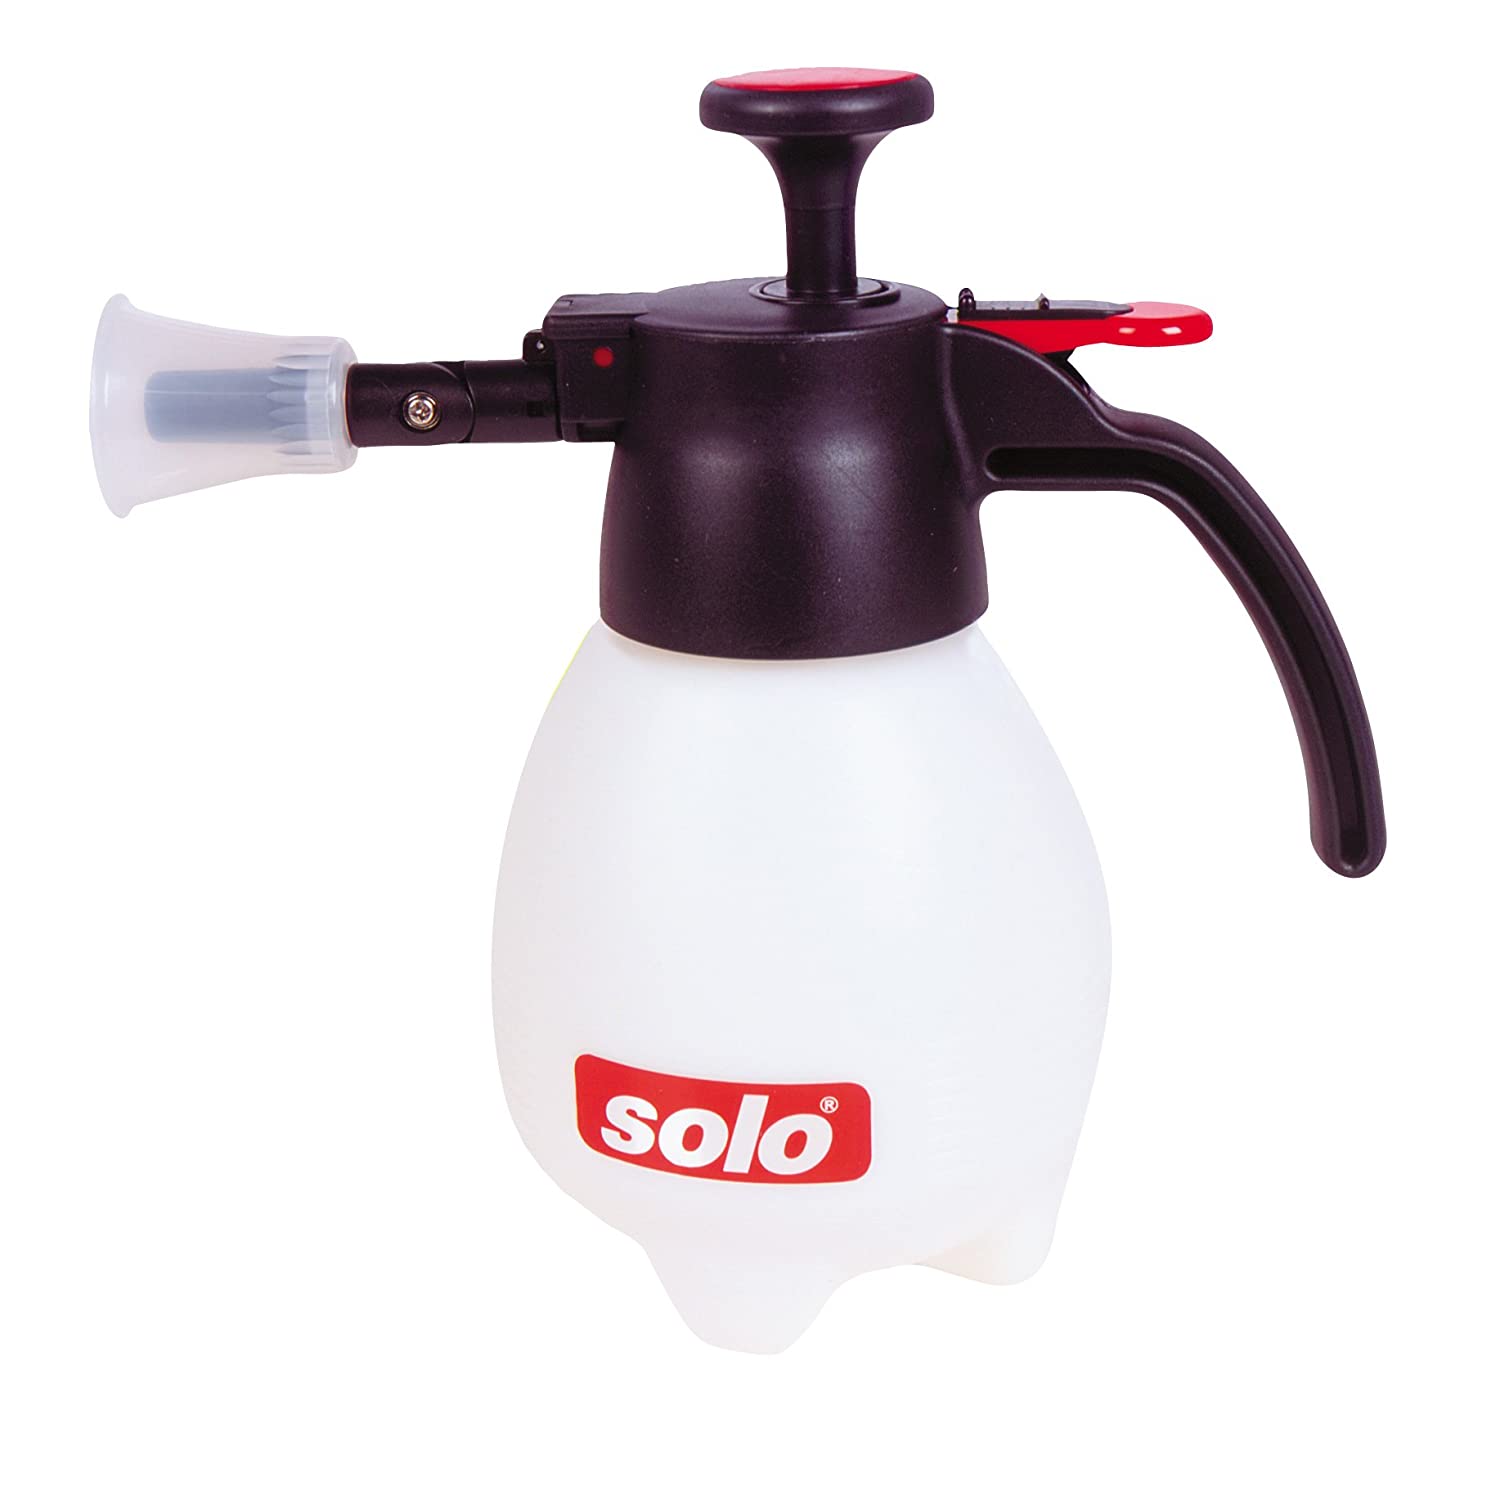 Solo 418 One-Hand Pressure Sprayer, 1-Liter